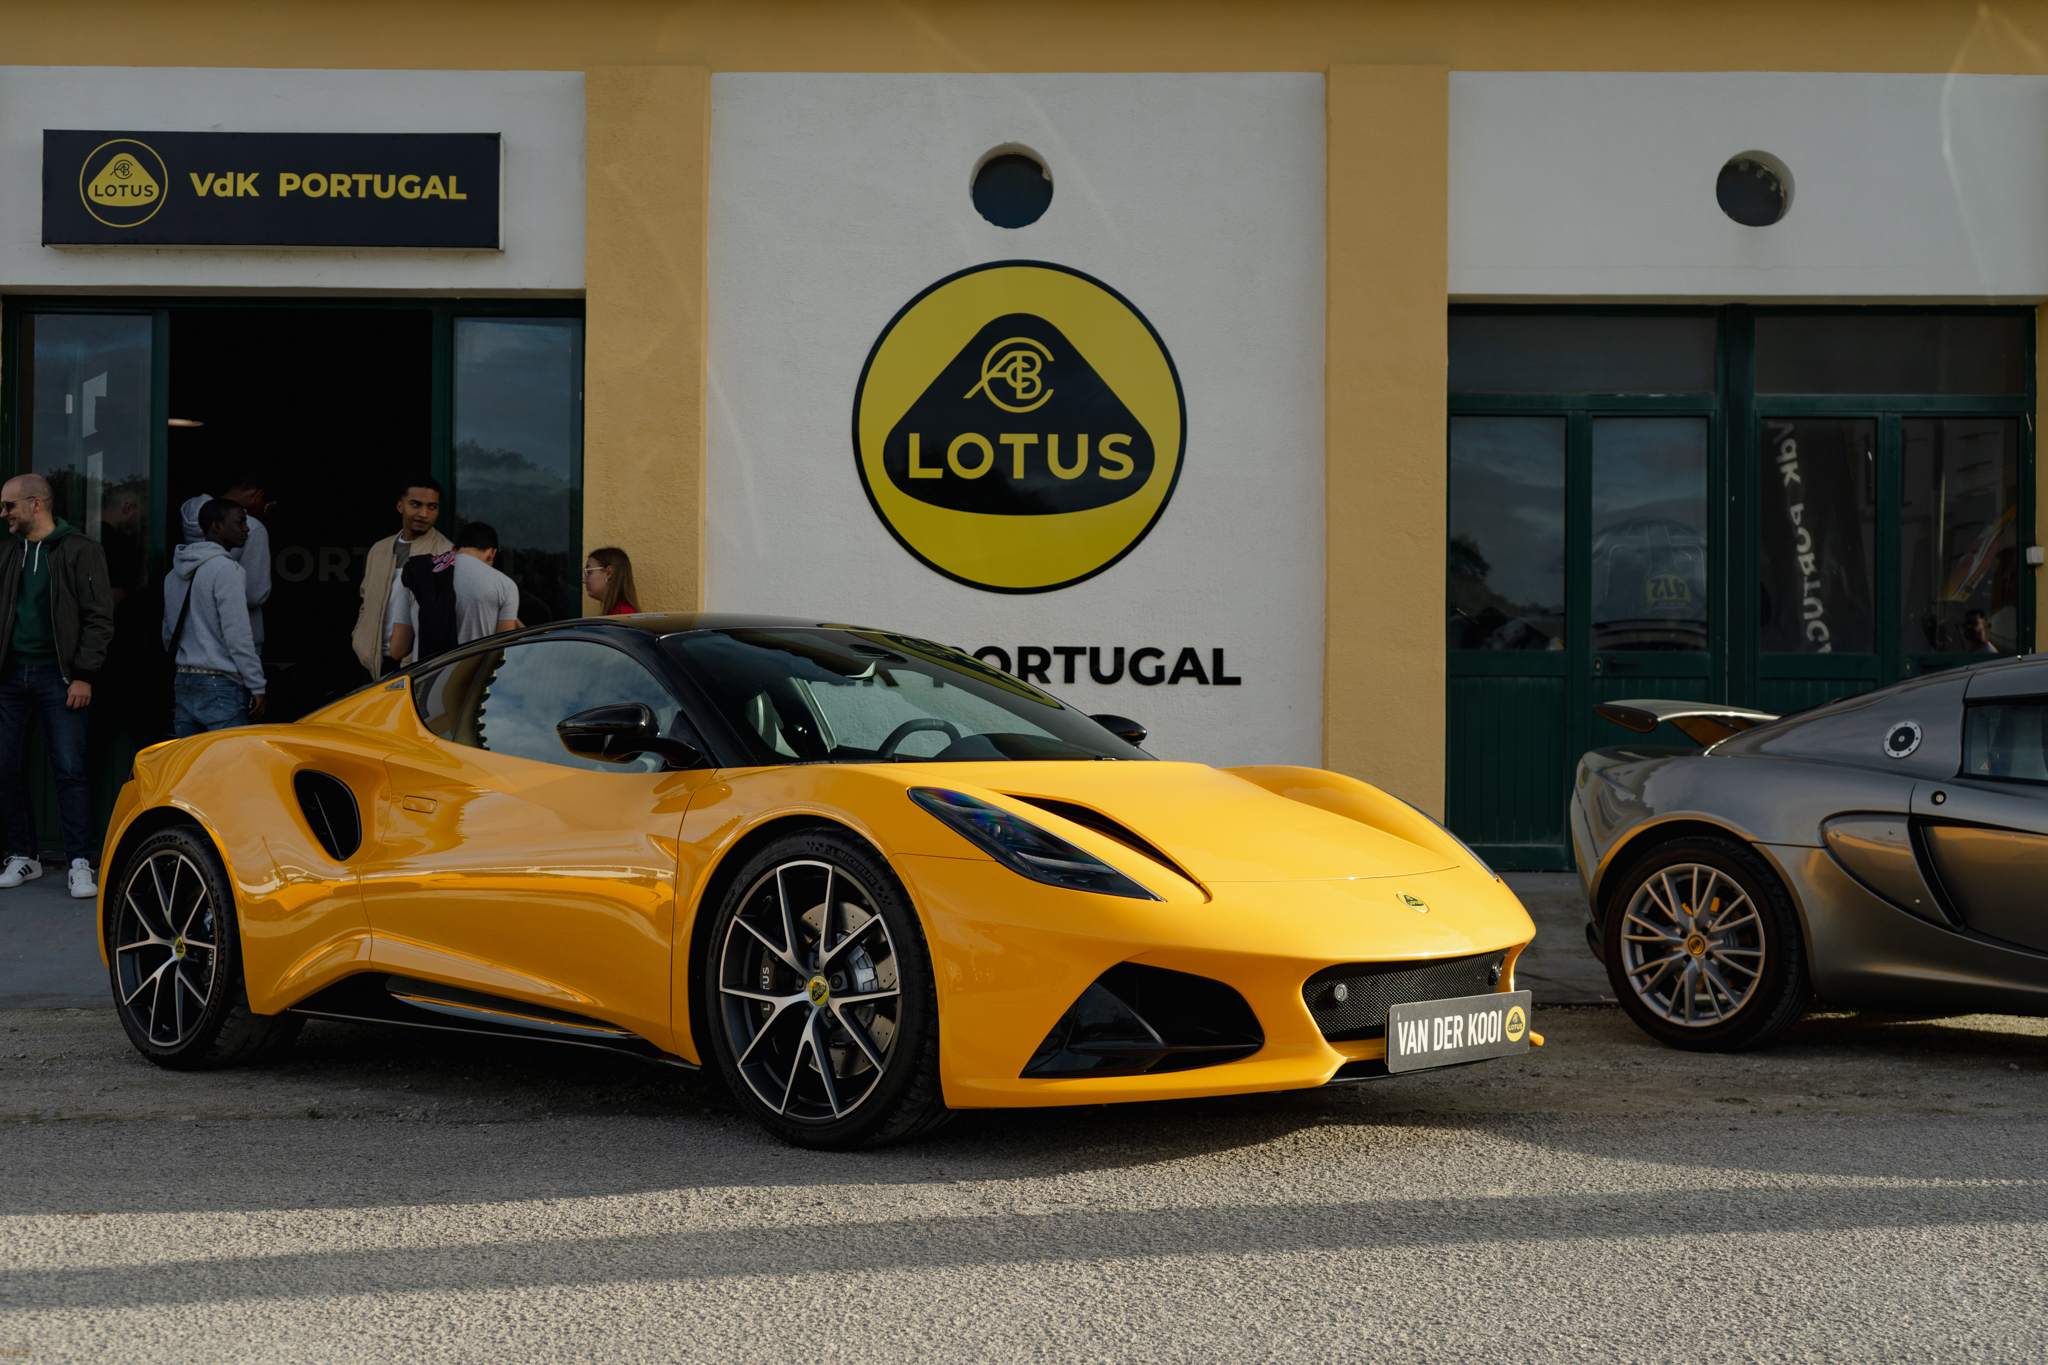 Lotus regressa oficialmente a Portugal “pelas mãos” da Van der Kooi